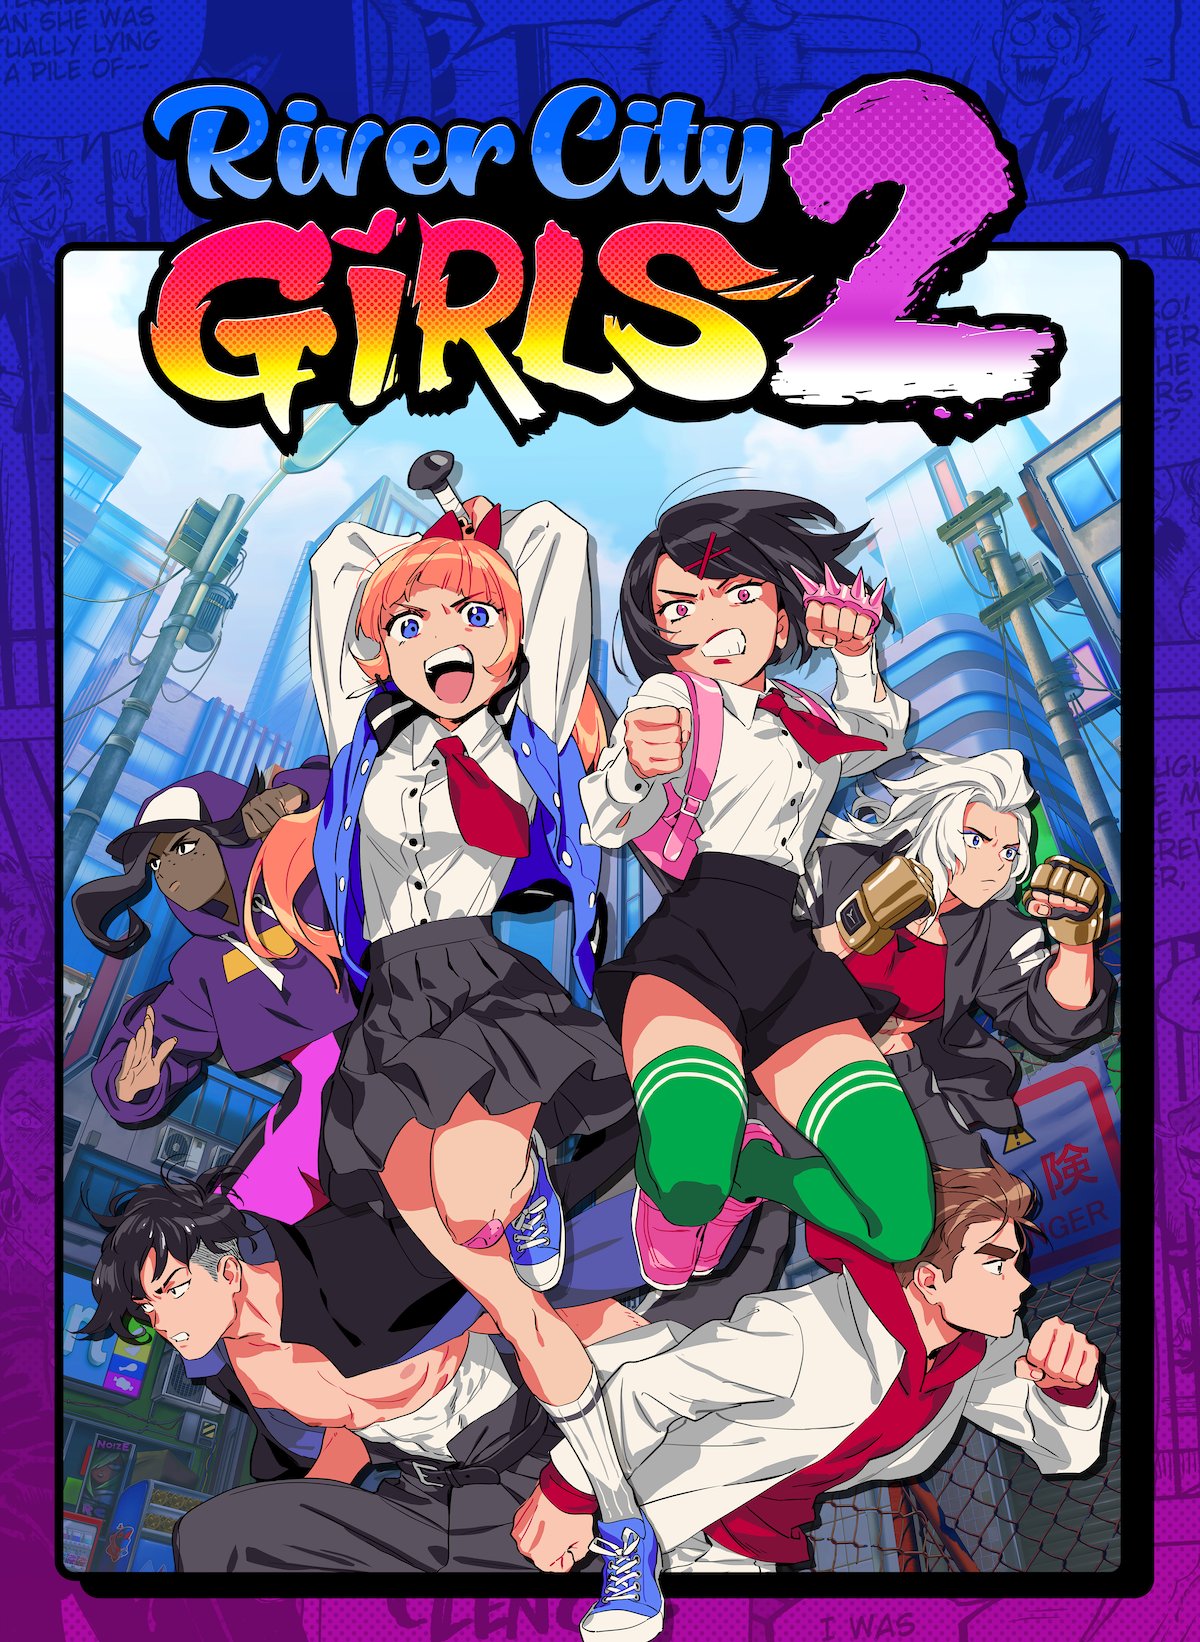 River City Girls 2 cover art